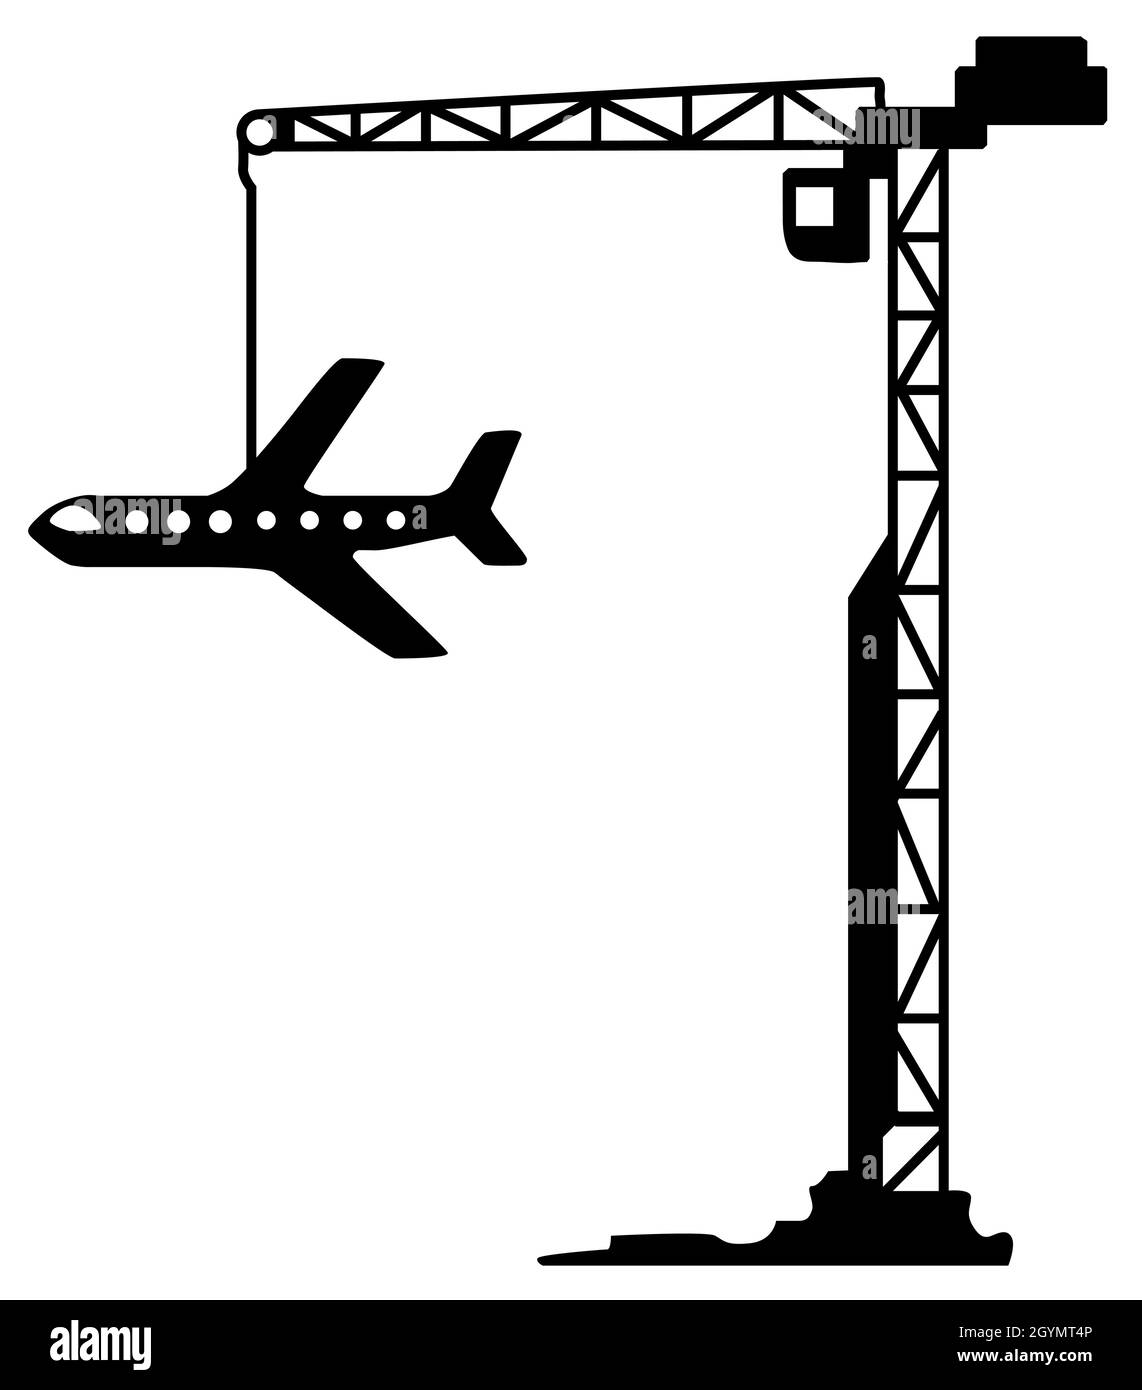 Carroponte da cantiere velivolo profilo nero, illustrazione vettoriale, verticale, su bianco, isolato Illustrazione Vettoriale